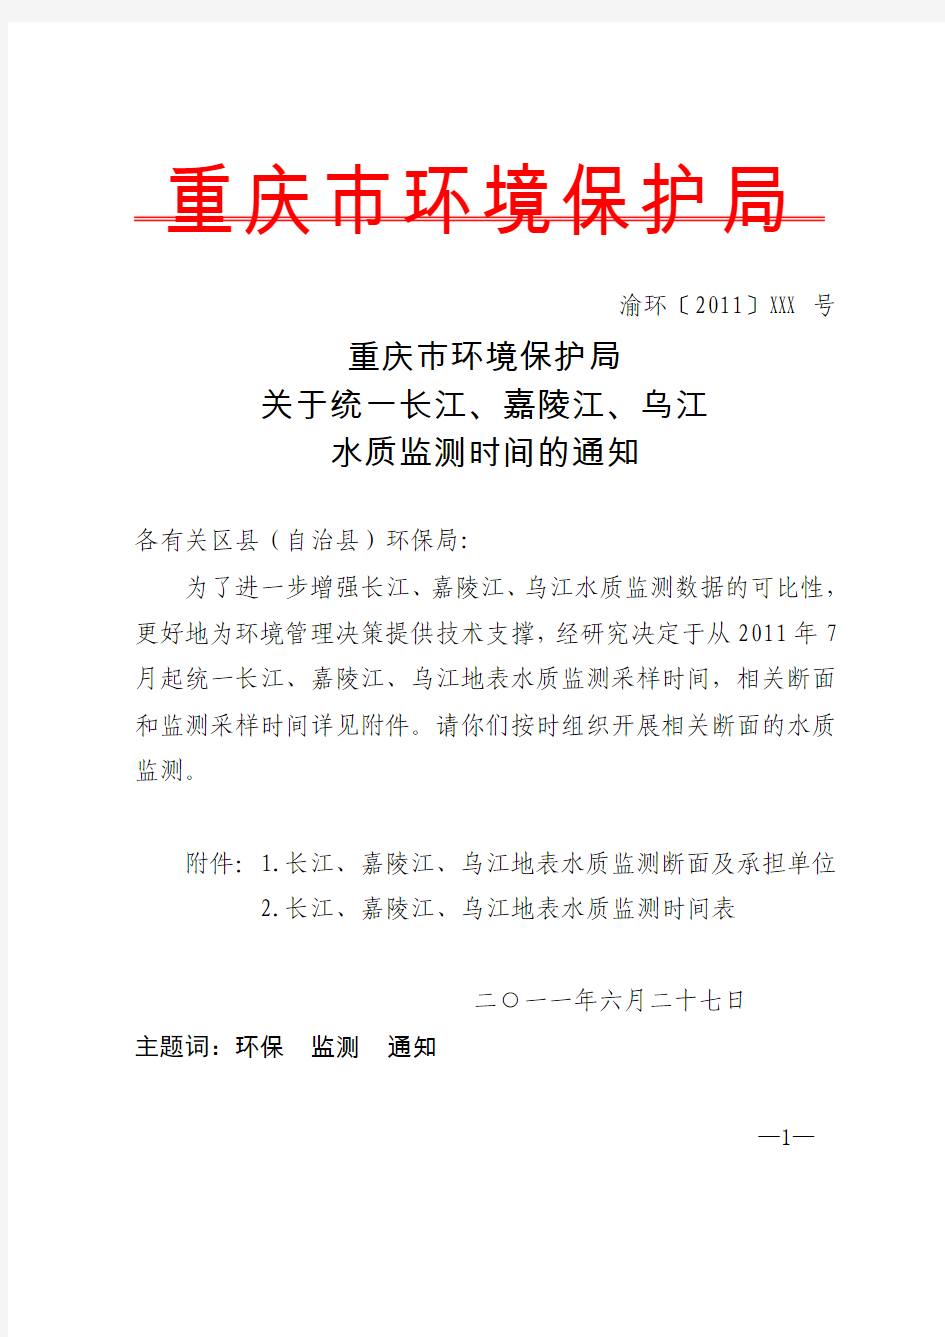 重庆市环境保护局关于统一长江、嘉陵江、乌江水质监测时间的通知